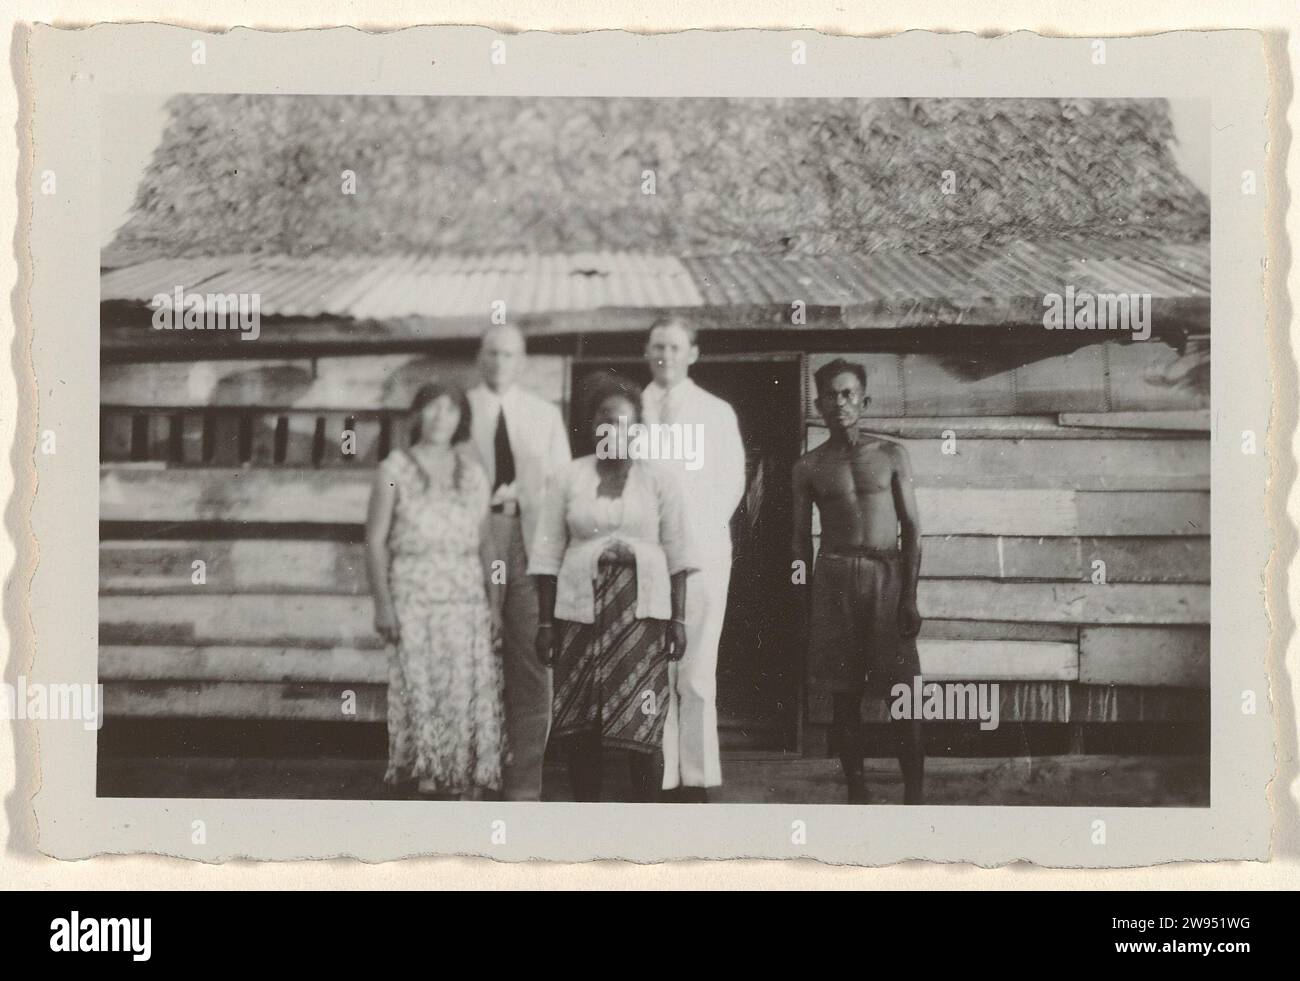 Drei europäische Männer, die mit einem javanisch-surinamischen Paar posieren, 1929–1930 fotografieren Suriname fotografisches Unterstützungsdorf Moengo. Albina Stockfoto